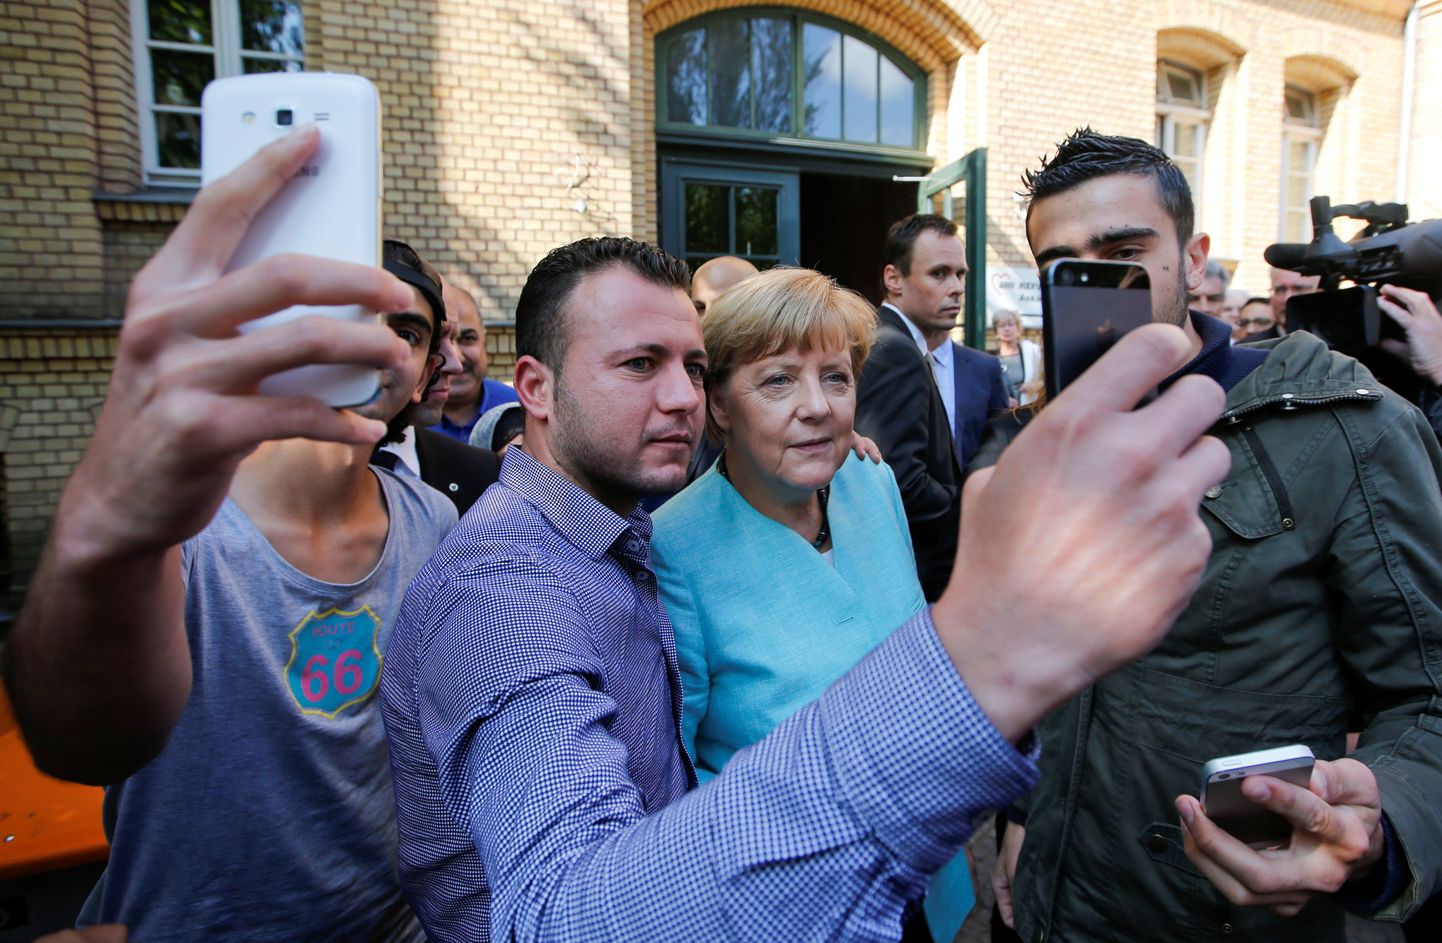 Saksamaa kantsler Angela Merkel poseerib selvefoto jaoks koos Süüriast ja Iraagist pärit põgenikega Berliinis 2015. aasta sügisel.